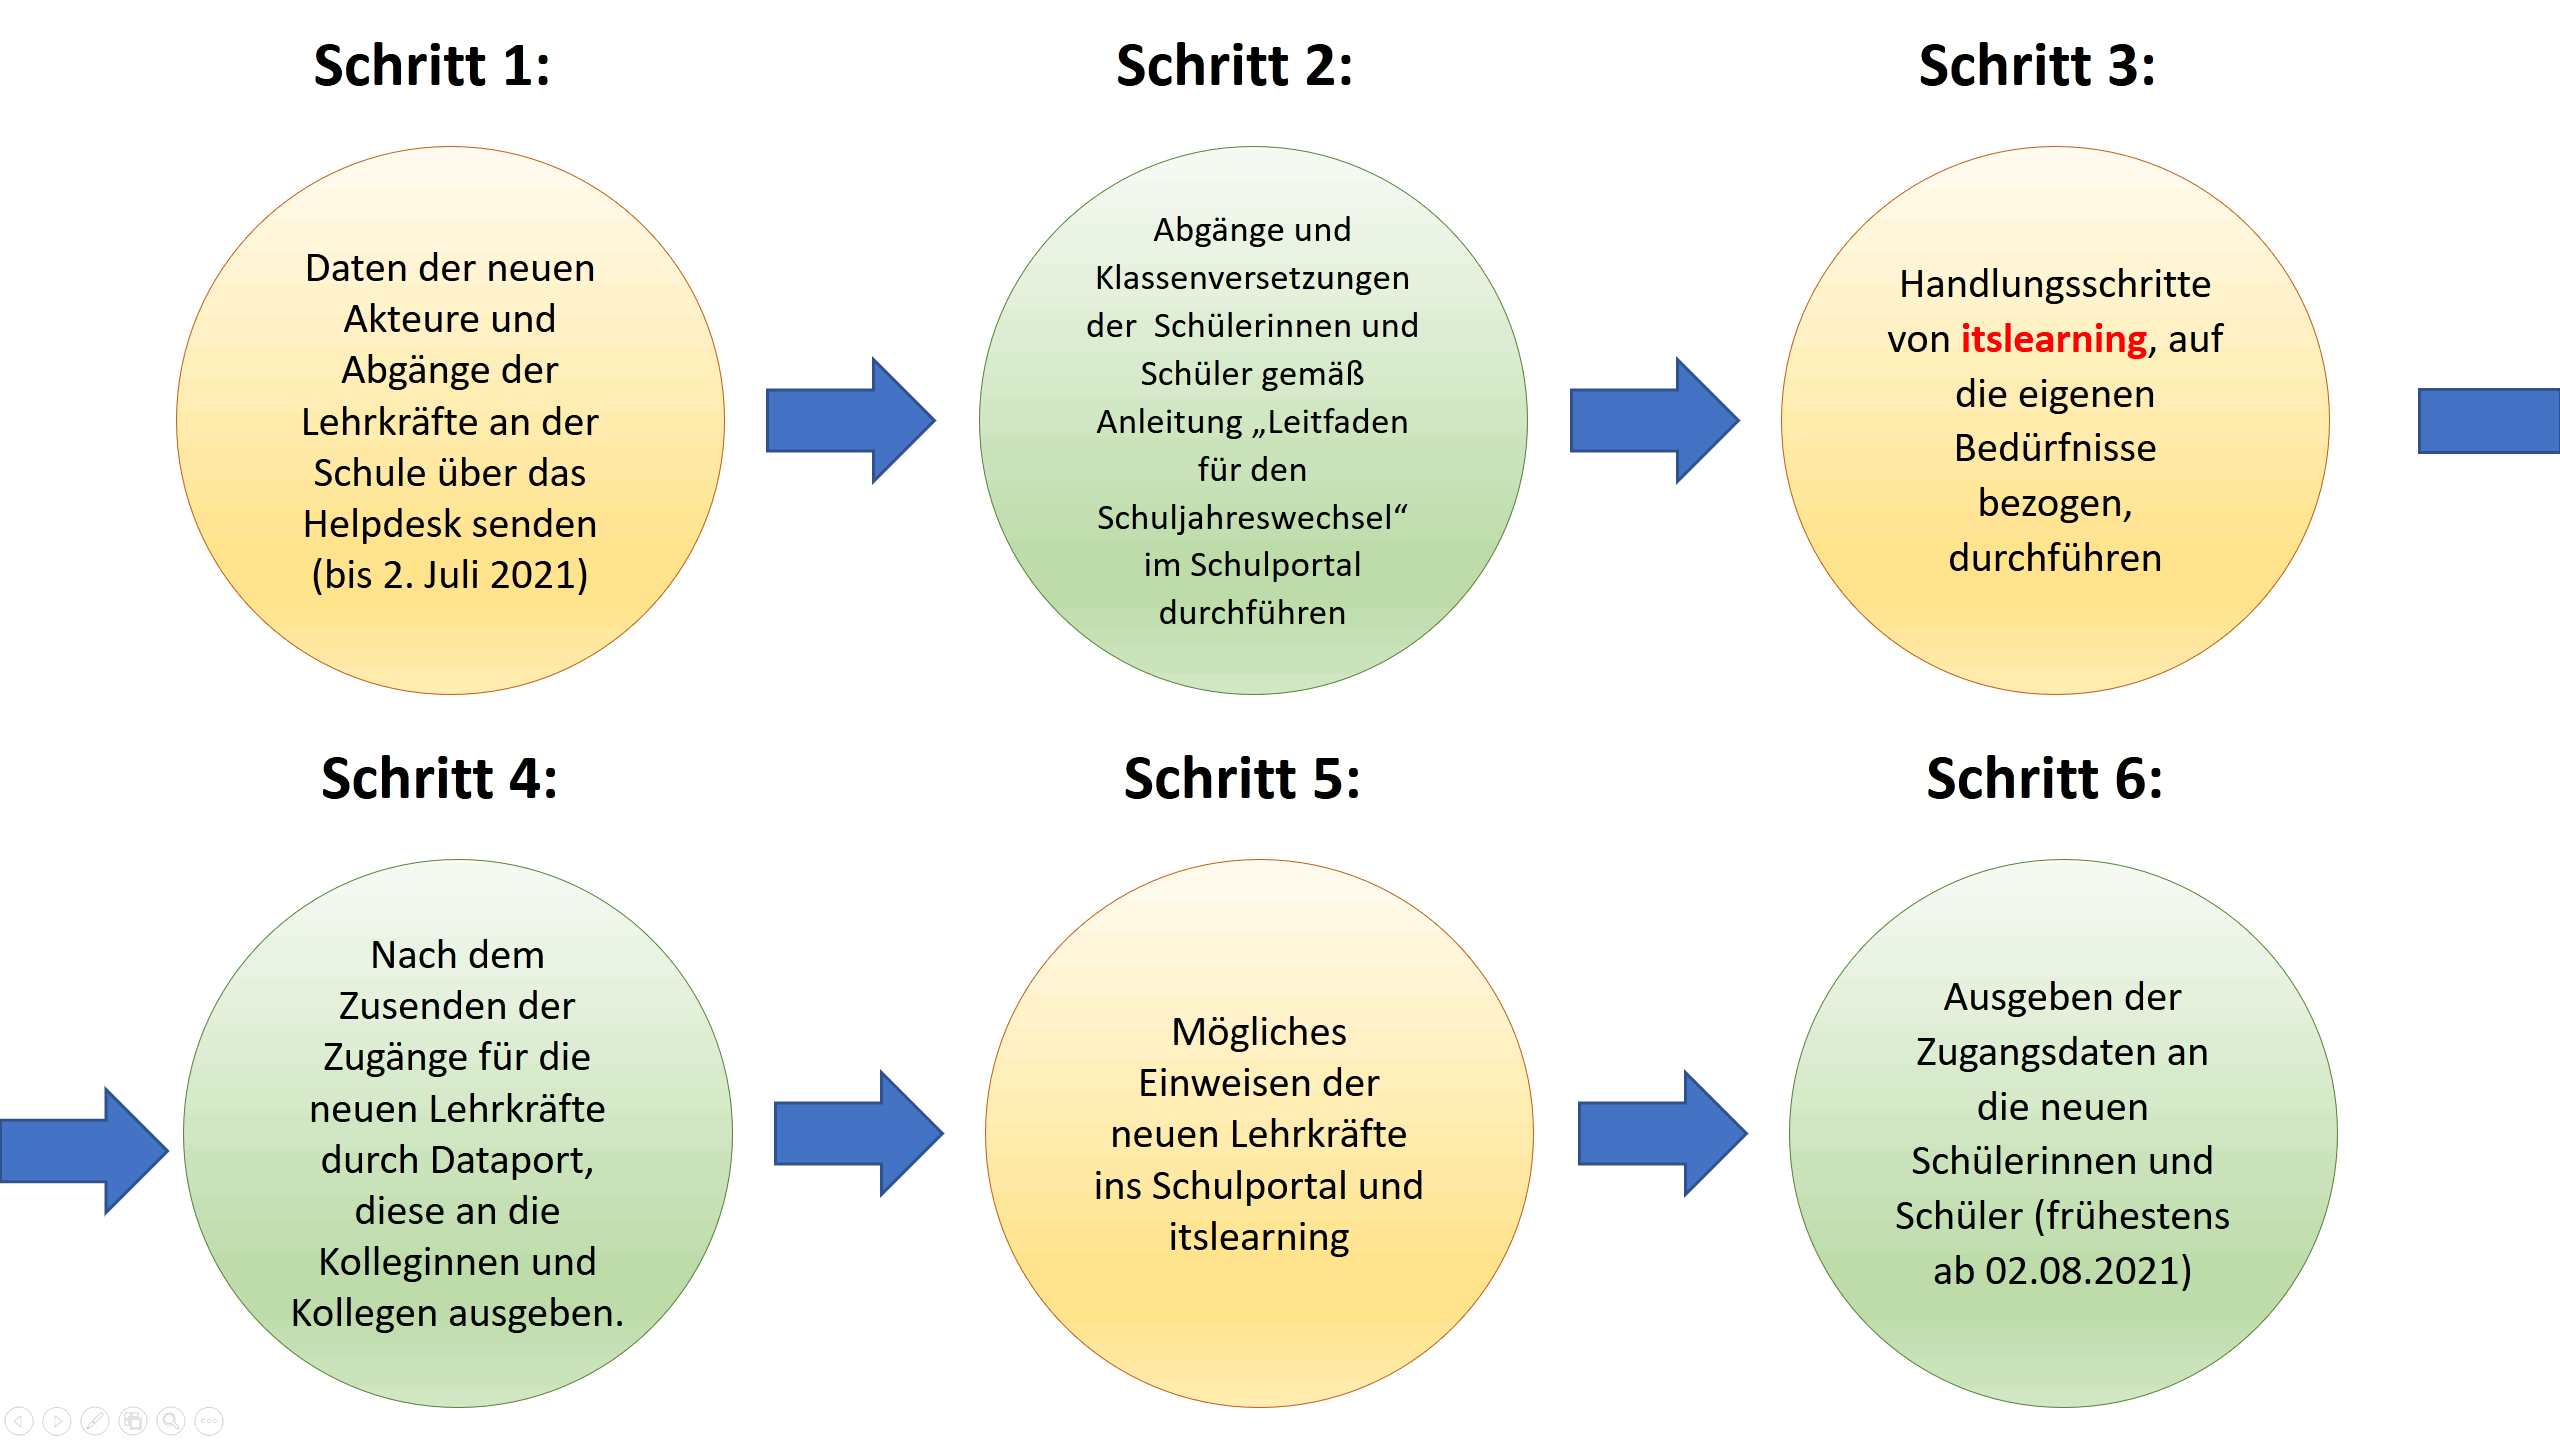 Abbildung Schuljahreswechsel Schulportal/itslearning